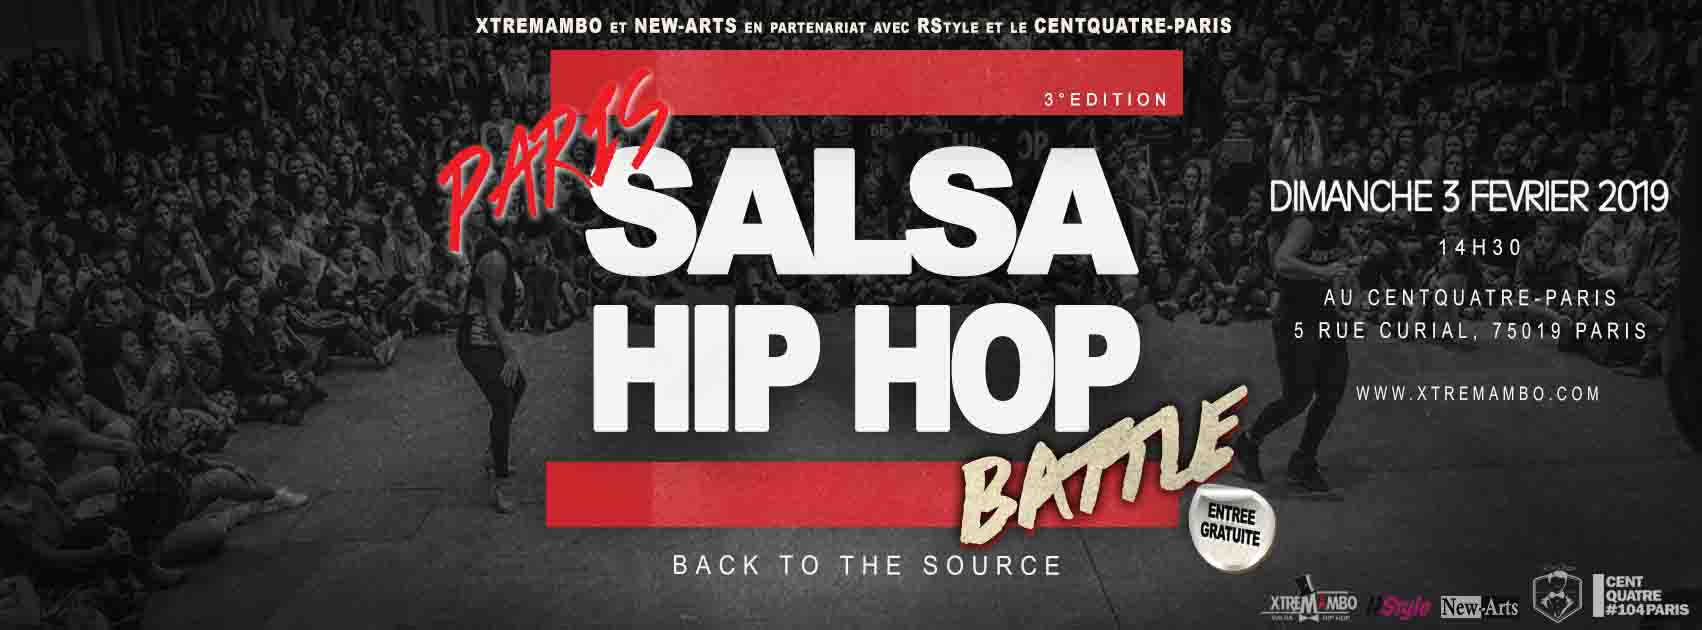 battle salsa hip hop, centquatre paris, salsa hip hop, chenôve, spectacle salsa hip hop, danse, chorégraphe, xtremambo, scène, paris salsa hip hop,